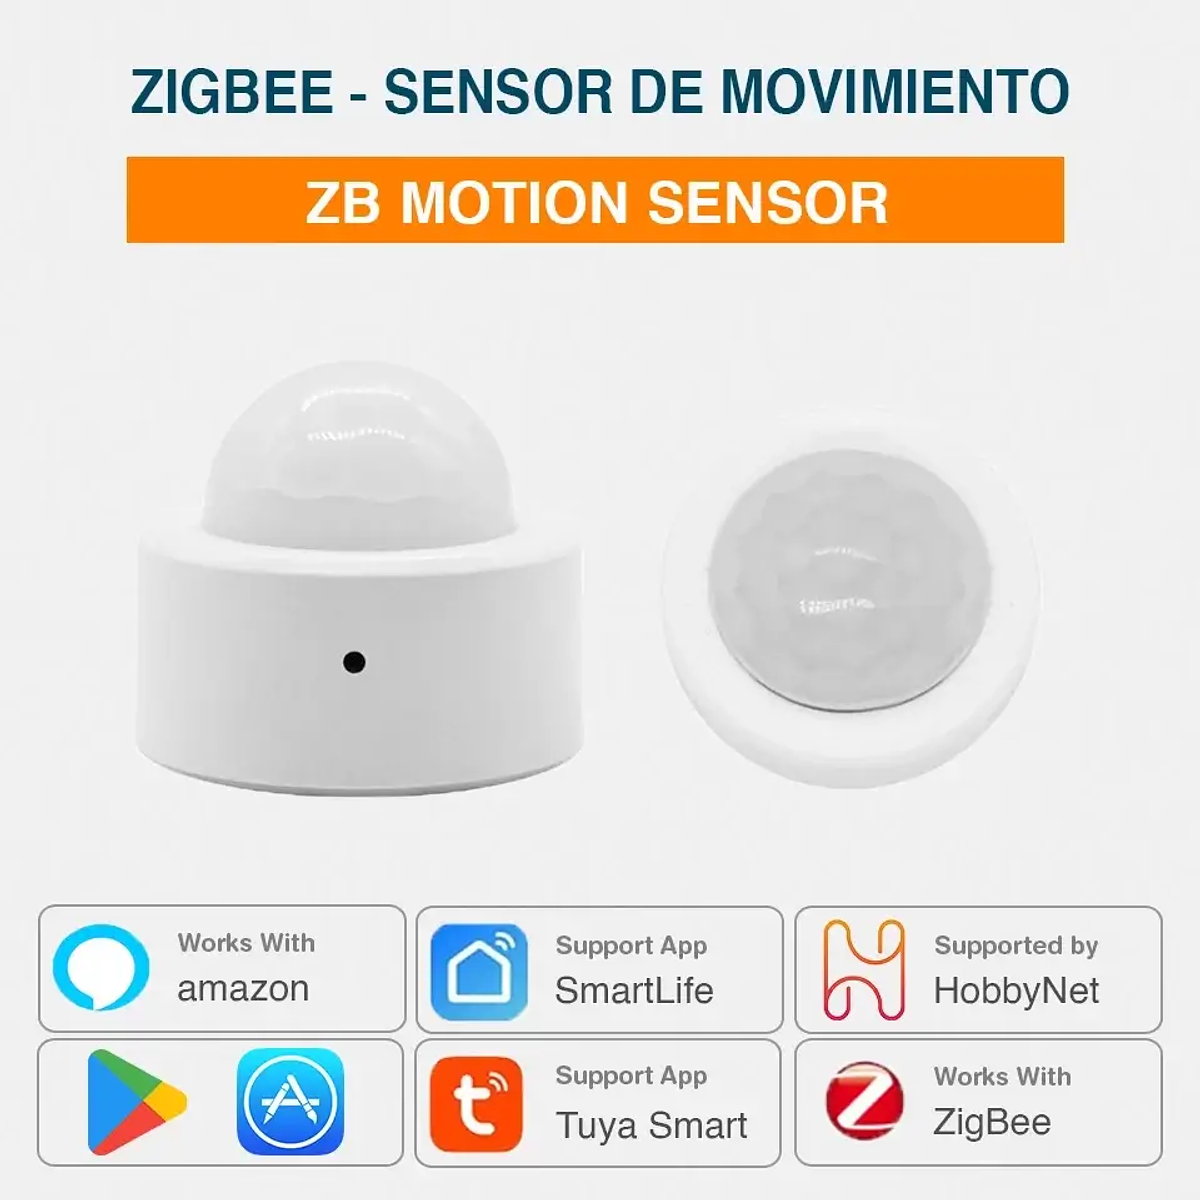 Zigbee - Sensor Movimiento PIR - Tuya Smart